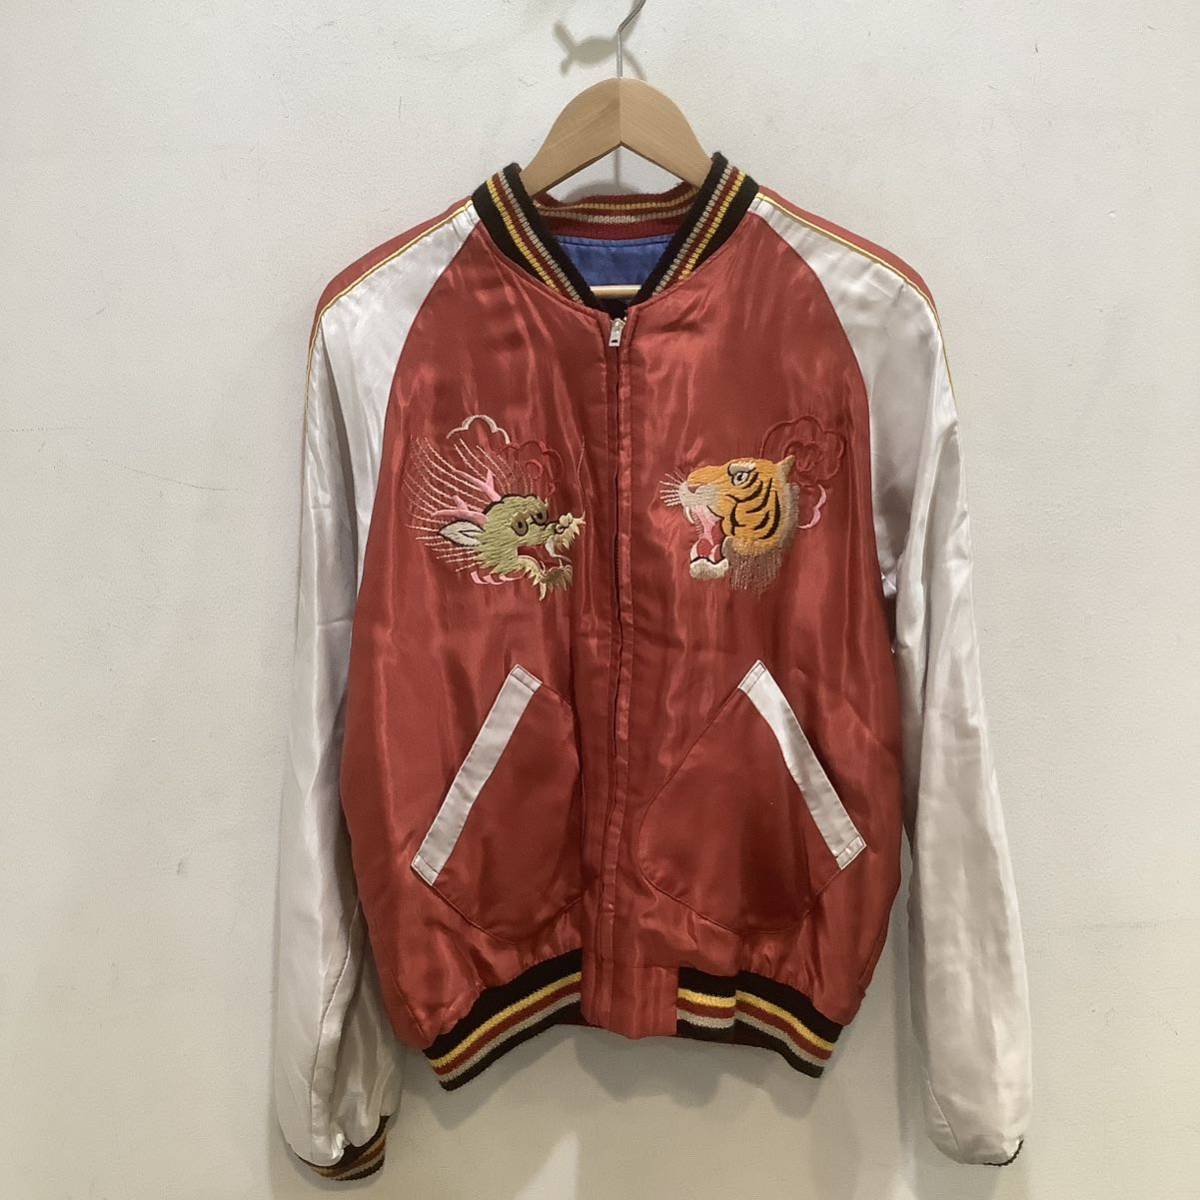  Toyo Enterprises Japanese sovenir jacket вышивка мир рисунок . дракон красный × темно-синий размер M 653172